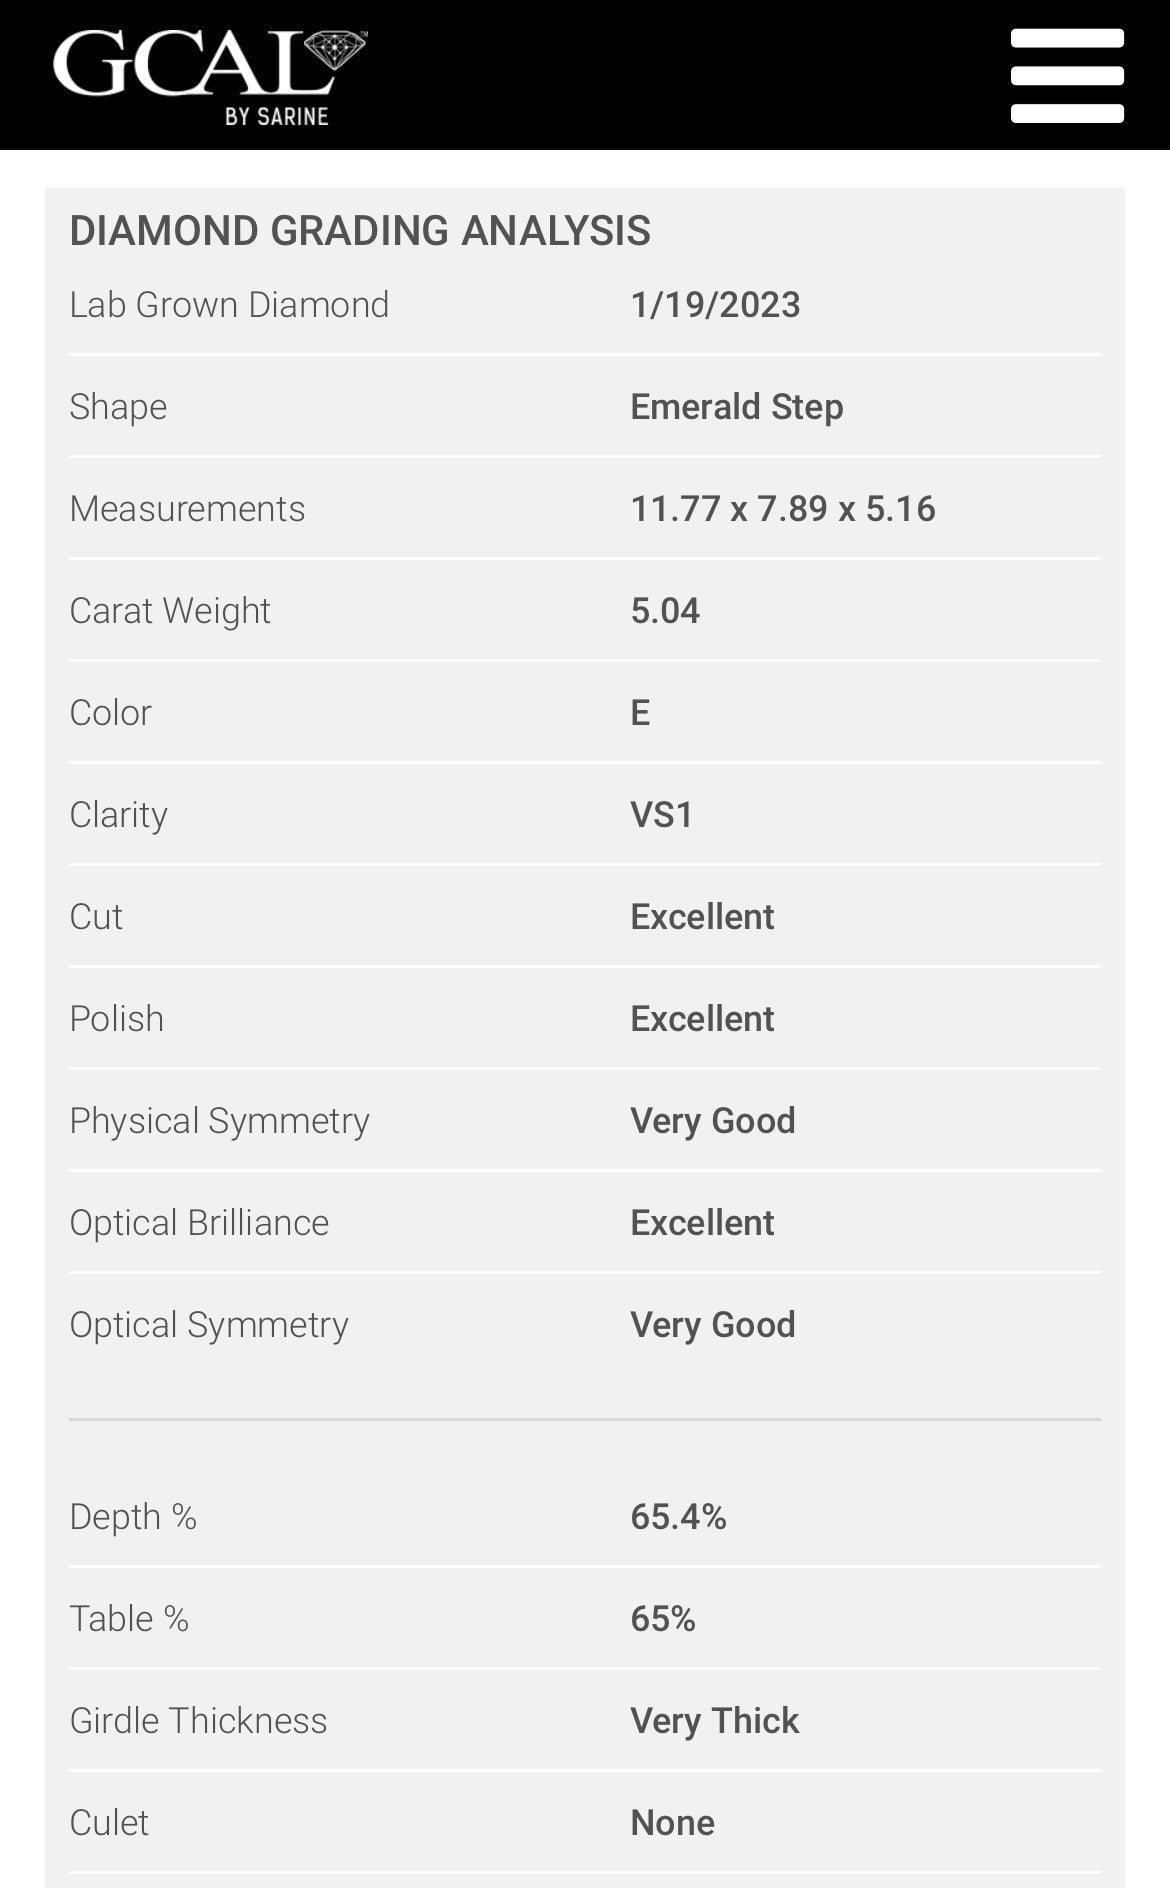 Emerald Cut 5.04 Carat Lab Grown Diamond , Color E , Clarity VS1 , GCAL Certificate LG330090827